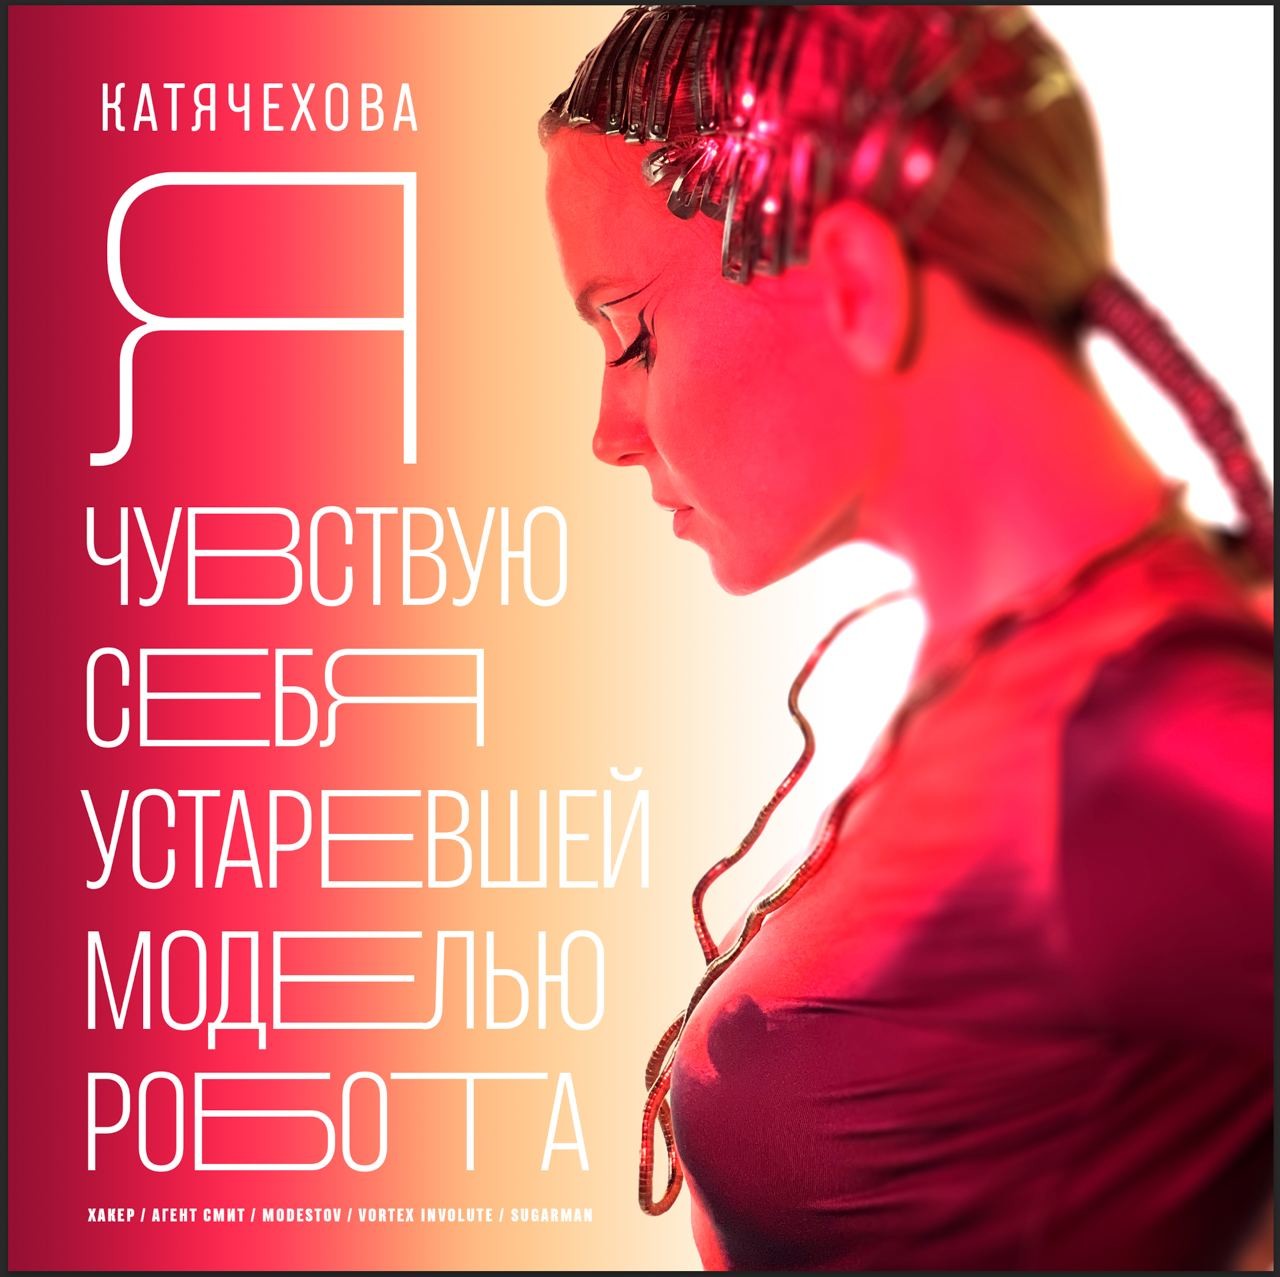 Катя Чехова - Я Чувствую себя устаревшей моделью робота (Агент Смит ремикс)